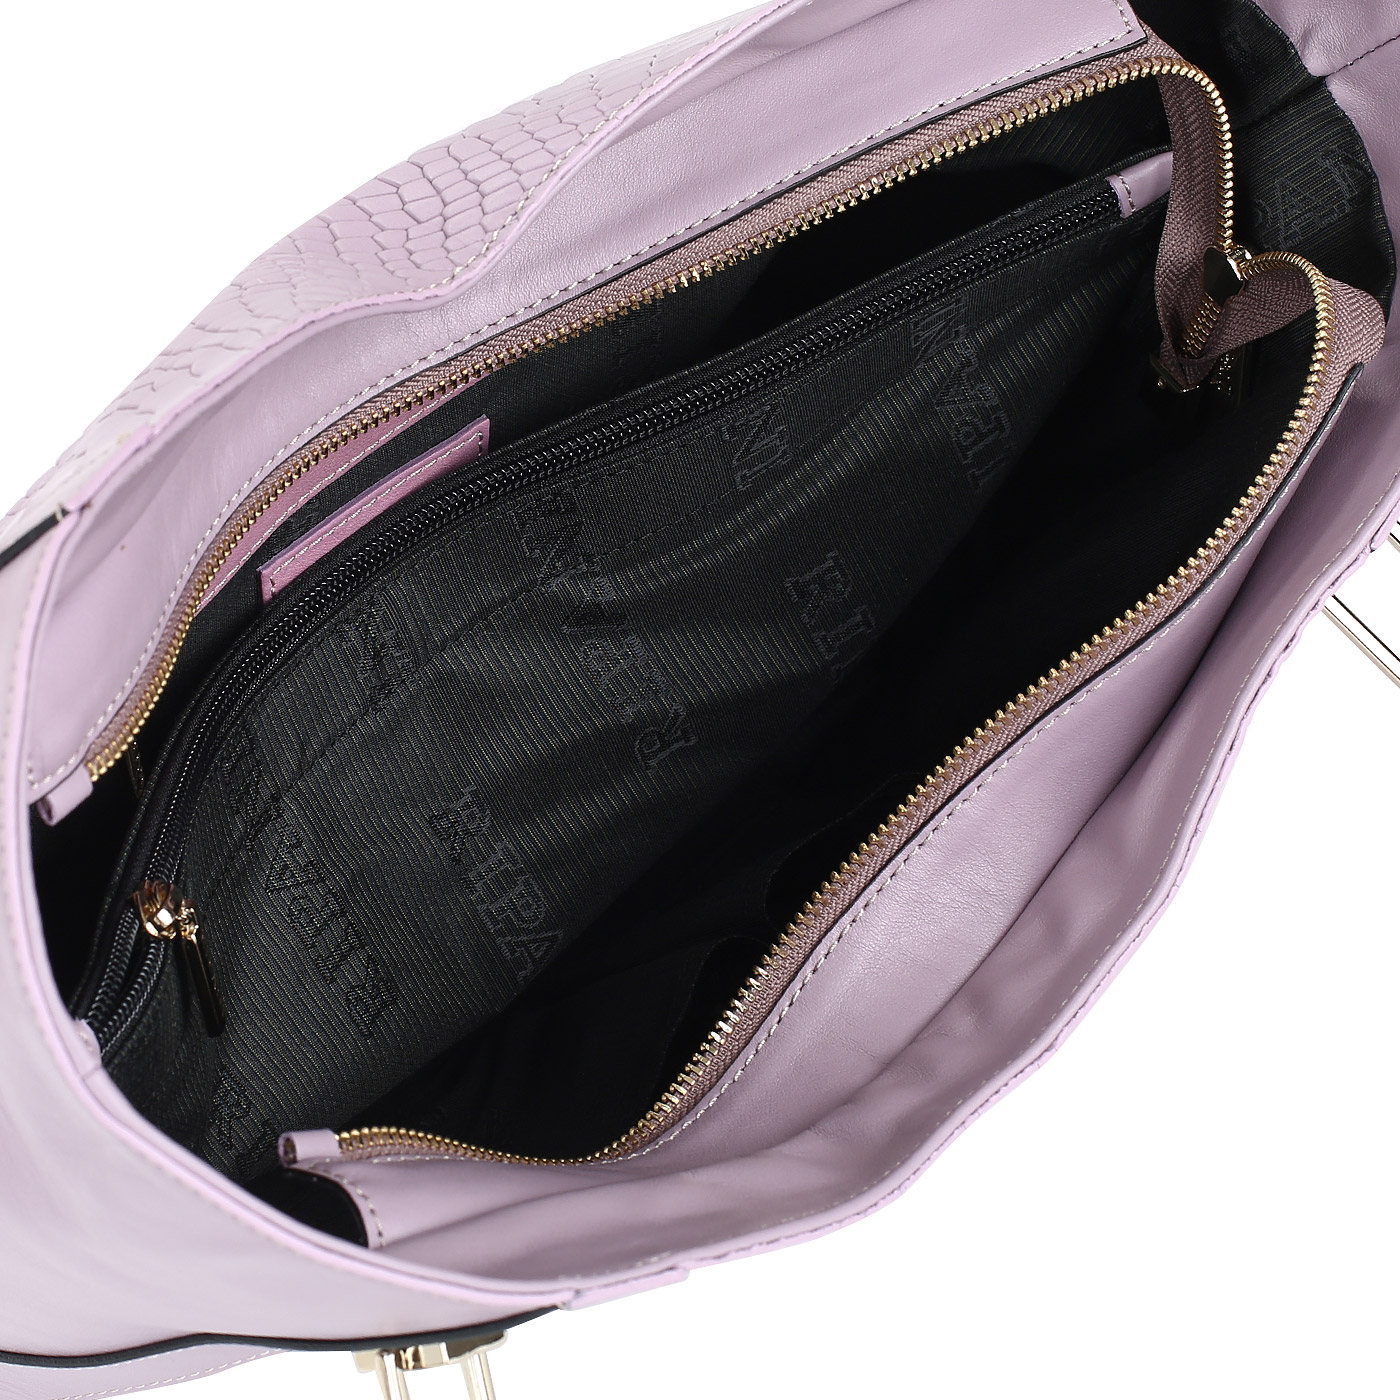 Вместительная женская сумка с отделкой под кожу питона Ripani Meringa